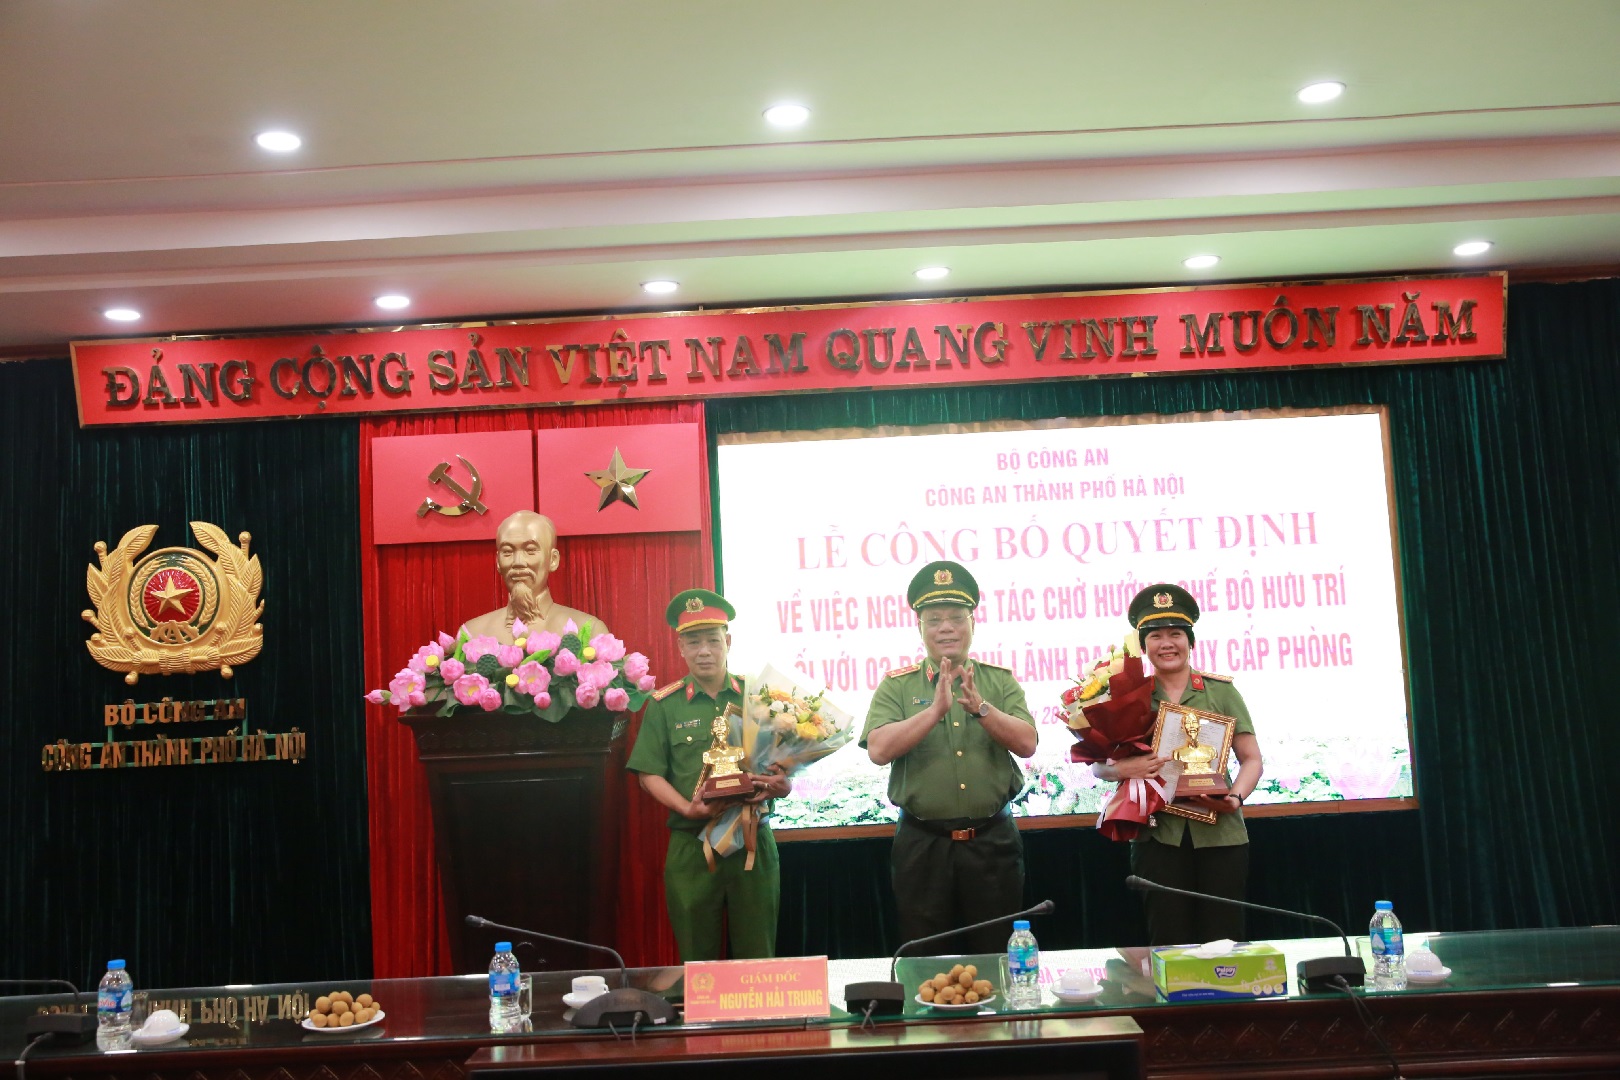 2 lãnh đạo cấp phòng Công an Hà Nội nghỉ chờ hưởng chế độ hưu trí - Ảnh 1.